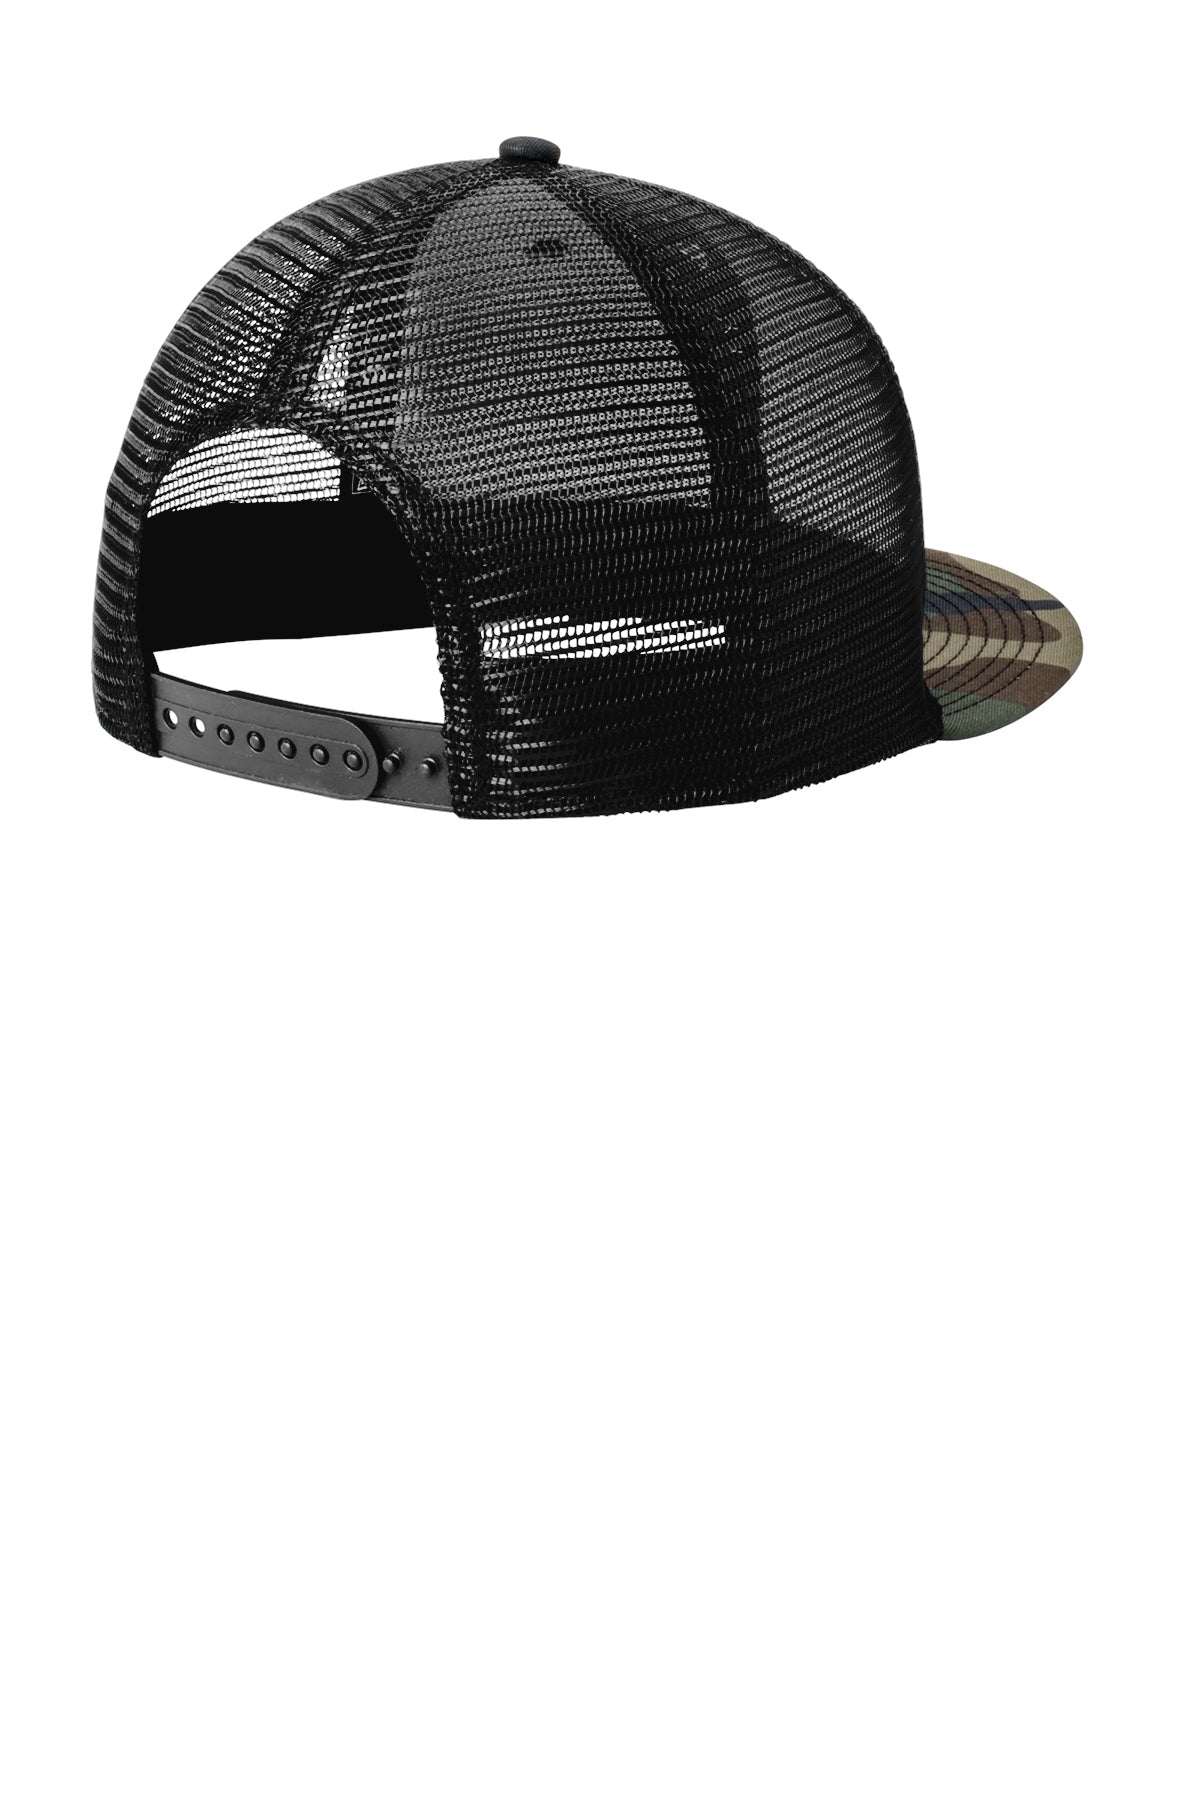 New Era Standard Fit Trucker Caps, Camo/ Black